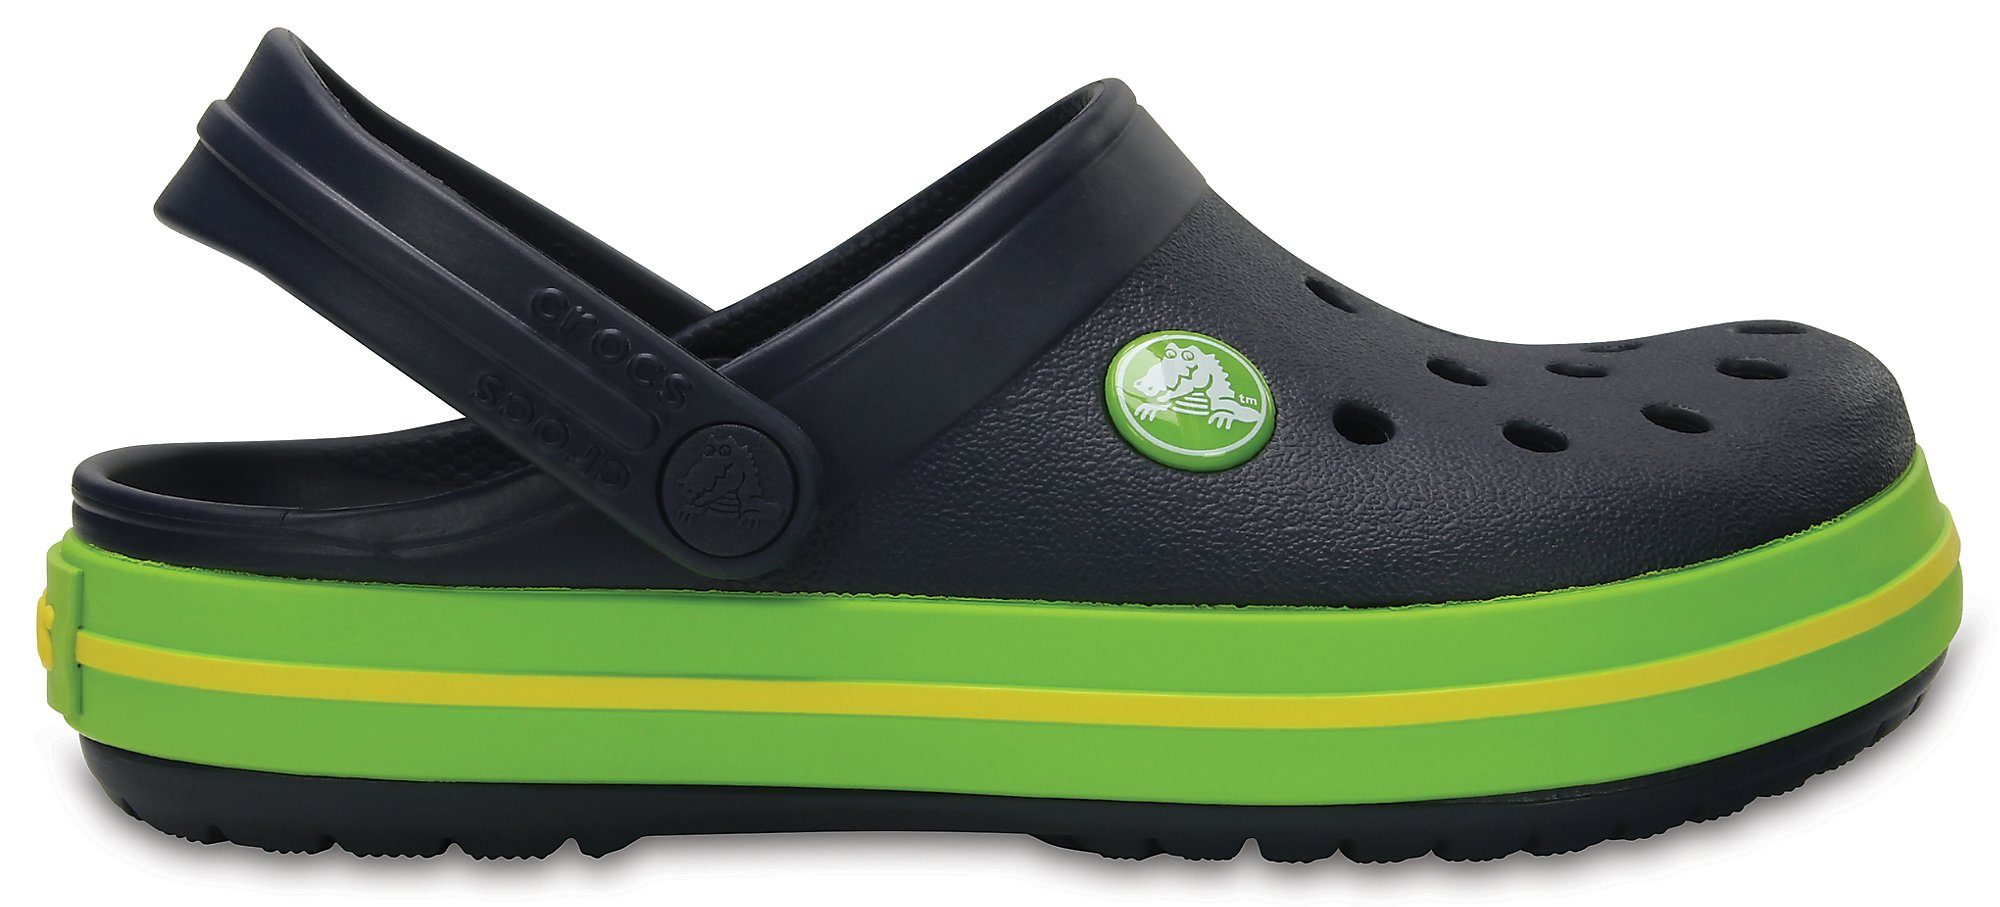 Sandale navy/volt Crocband Crocs green Kids Clog